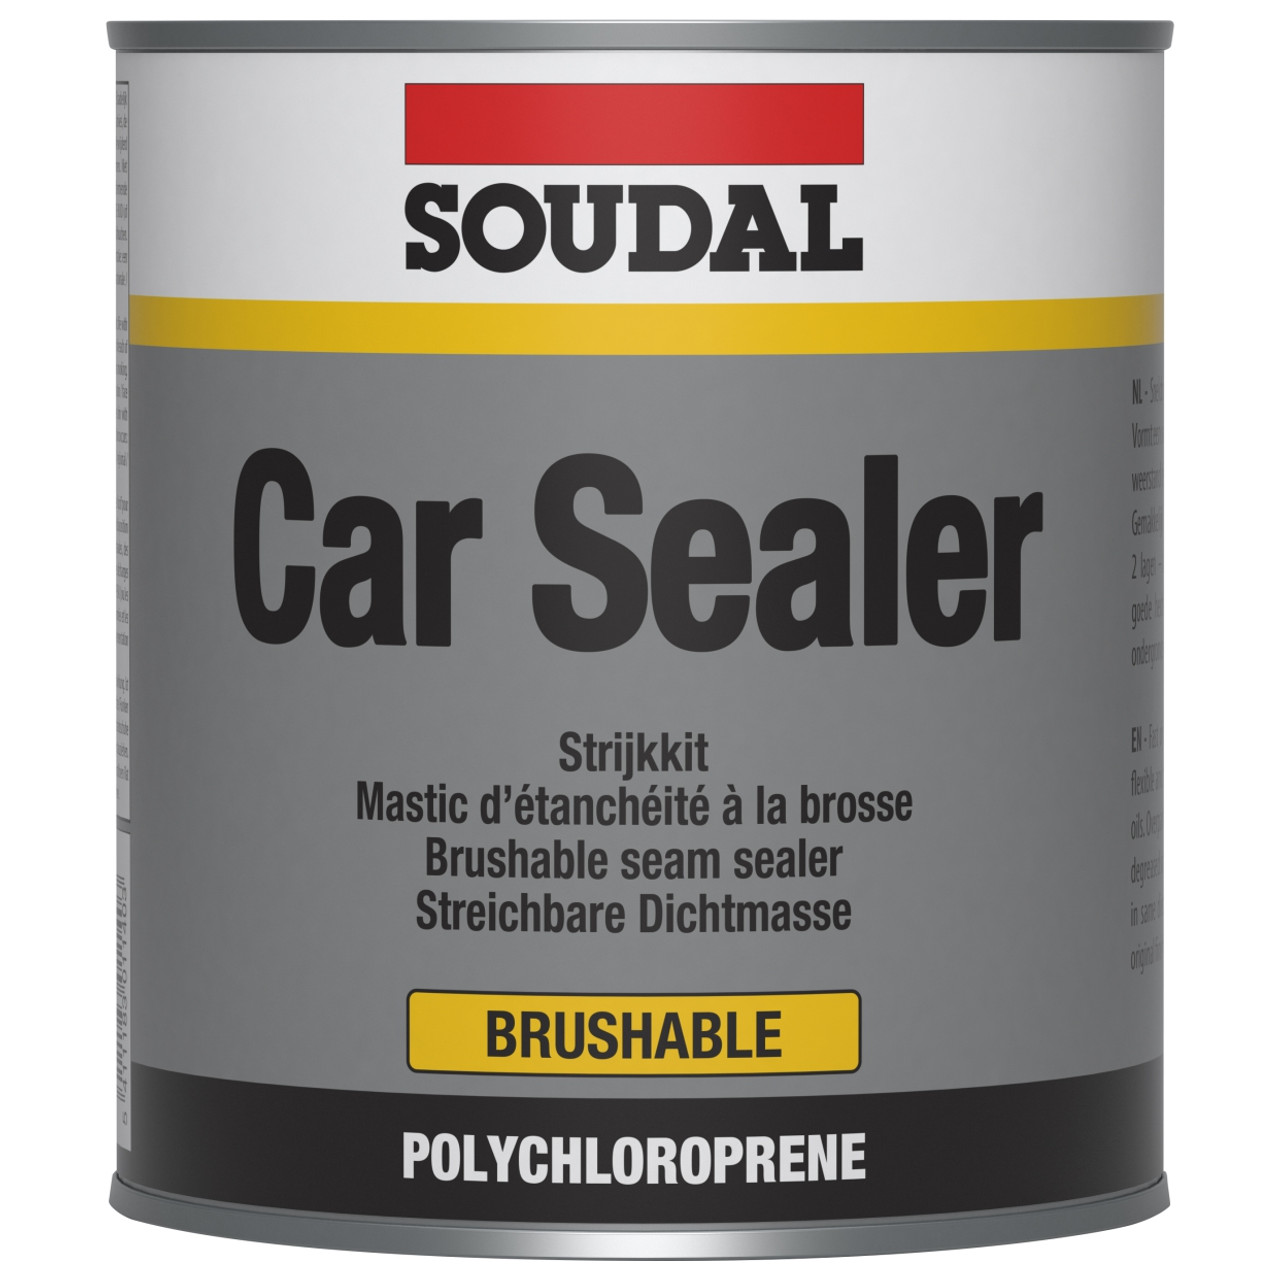 Car Sealer (Brushable) 1Kg